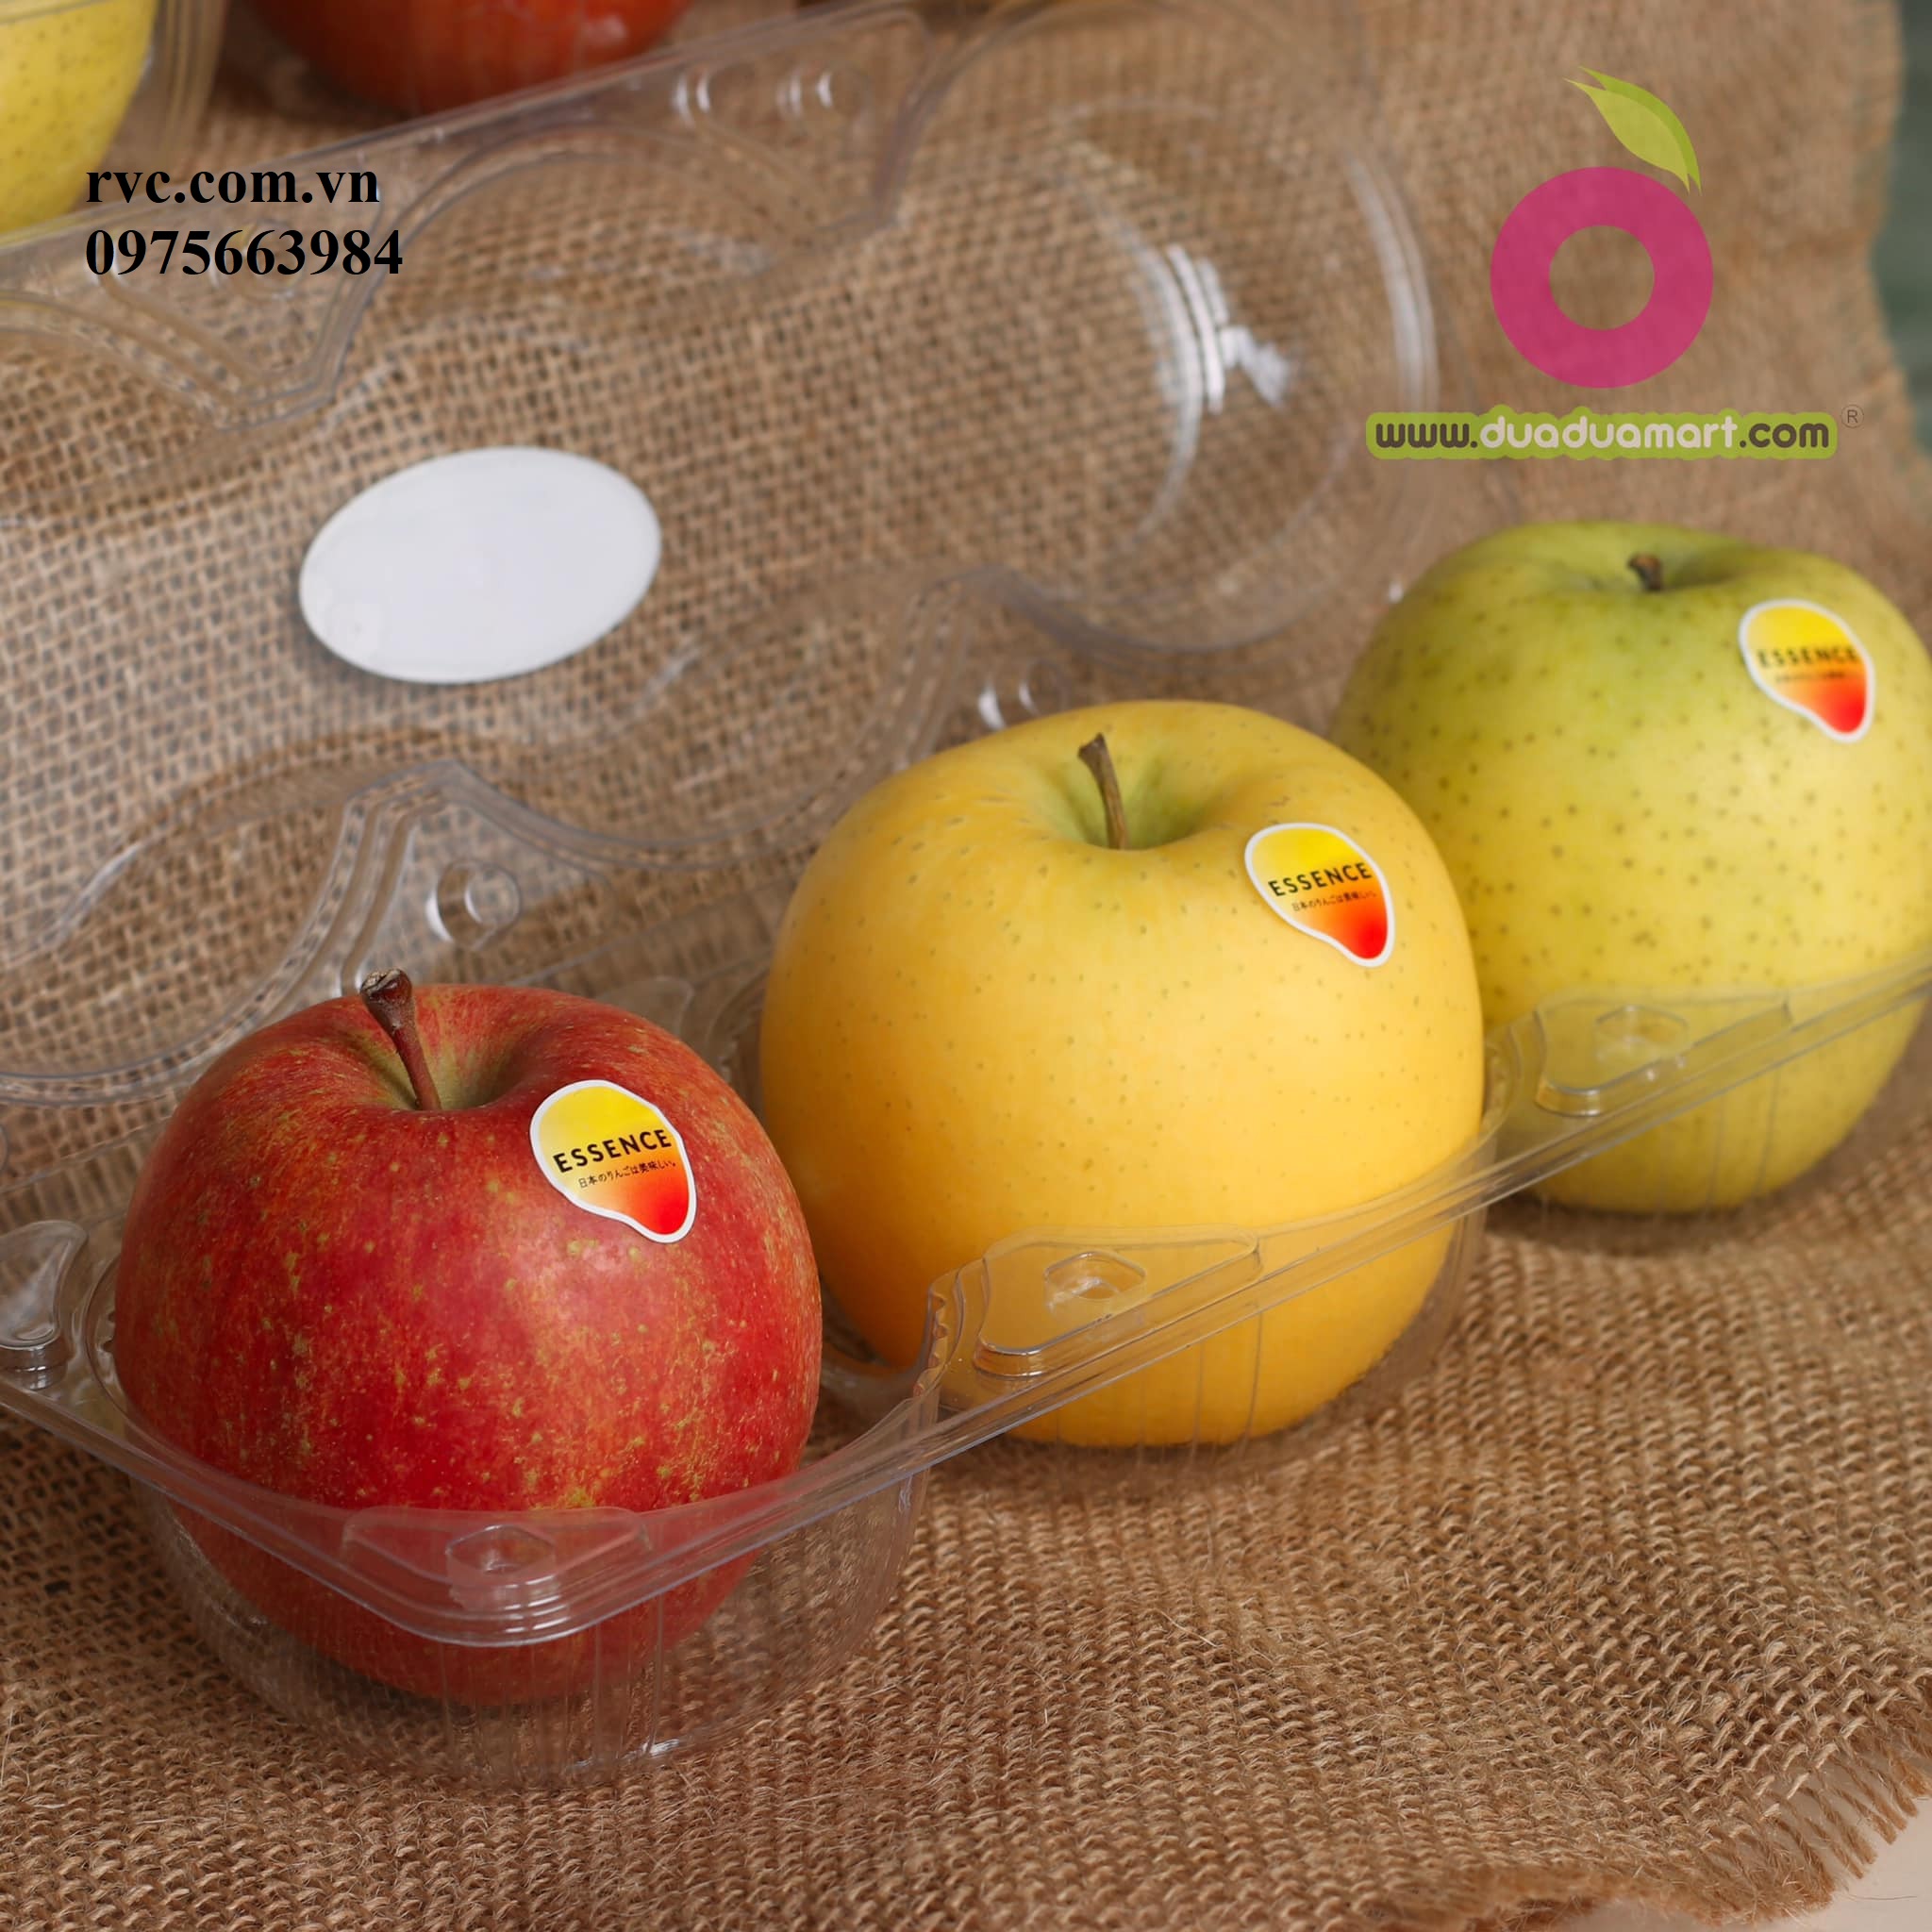 Mẫu hộp nhựa đựng 3 trái táo được ưa chuộng nhất hiện nay  2853983135561850368